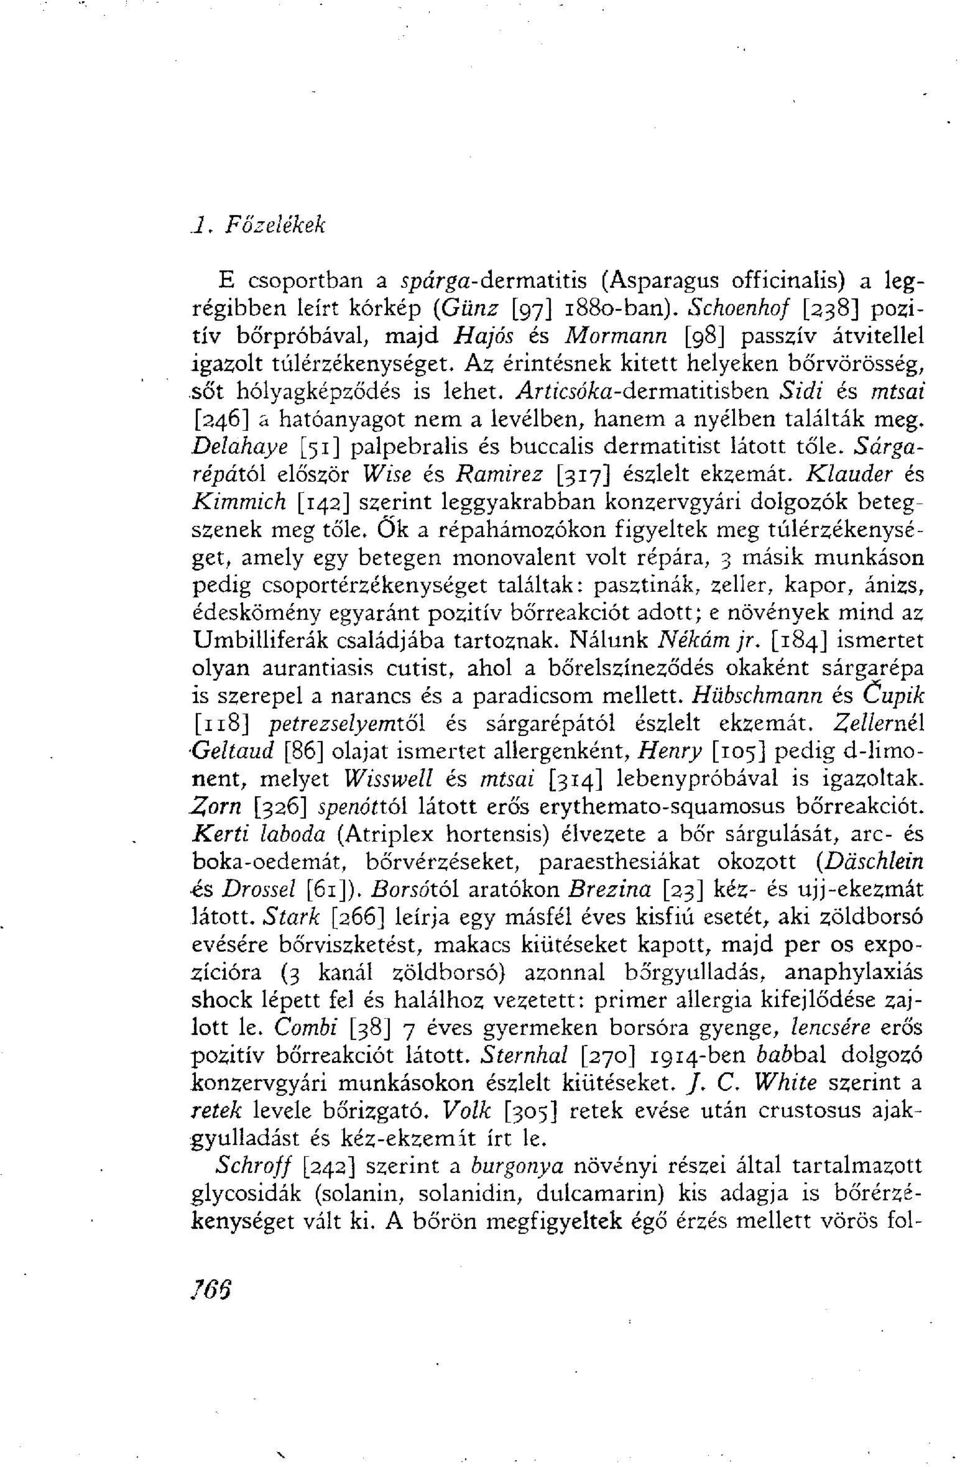 Ar zcsó/ca-dermatitisben Sidi és misai [246] a hatóanyagot nem a levélben, hanem a nyélben találták meg. Delahaye [51] palpebralis és buccalis dermatitist látott tőle.